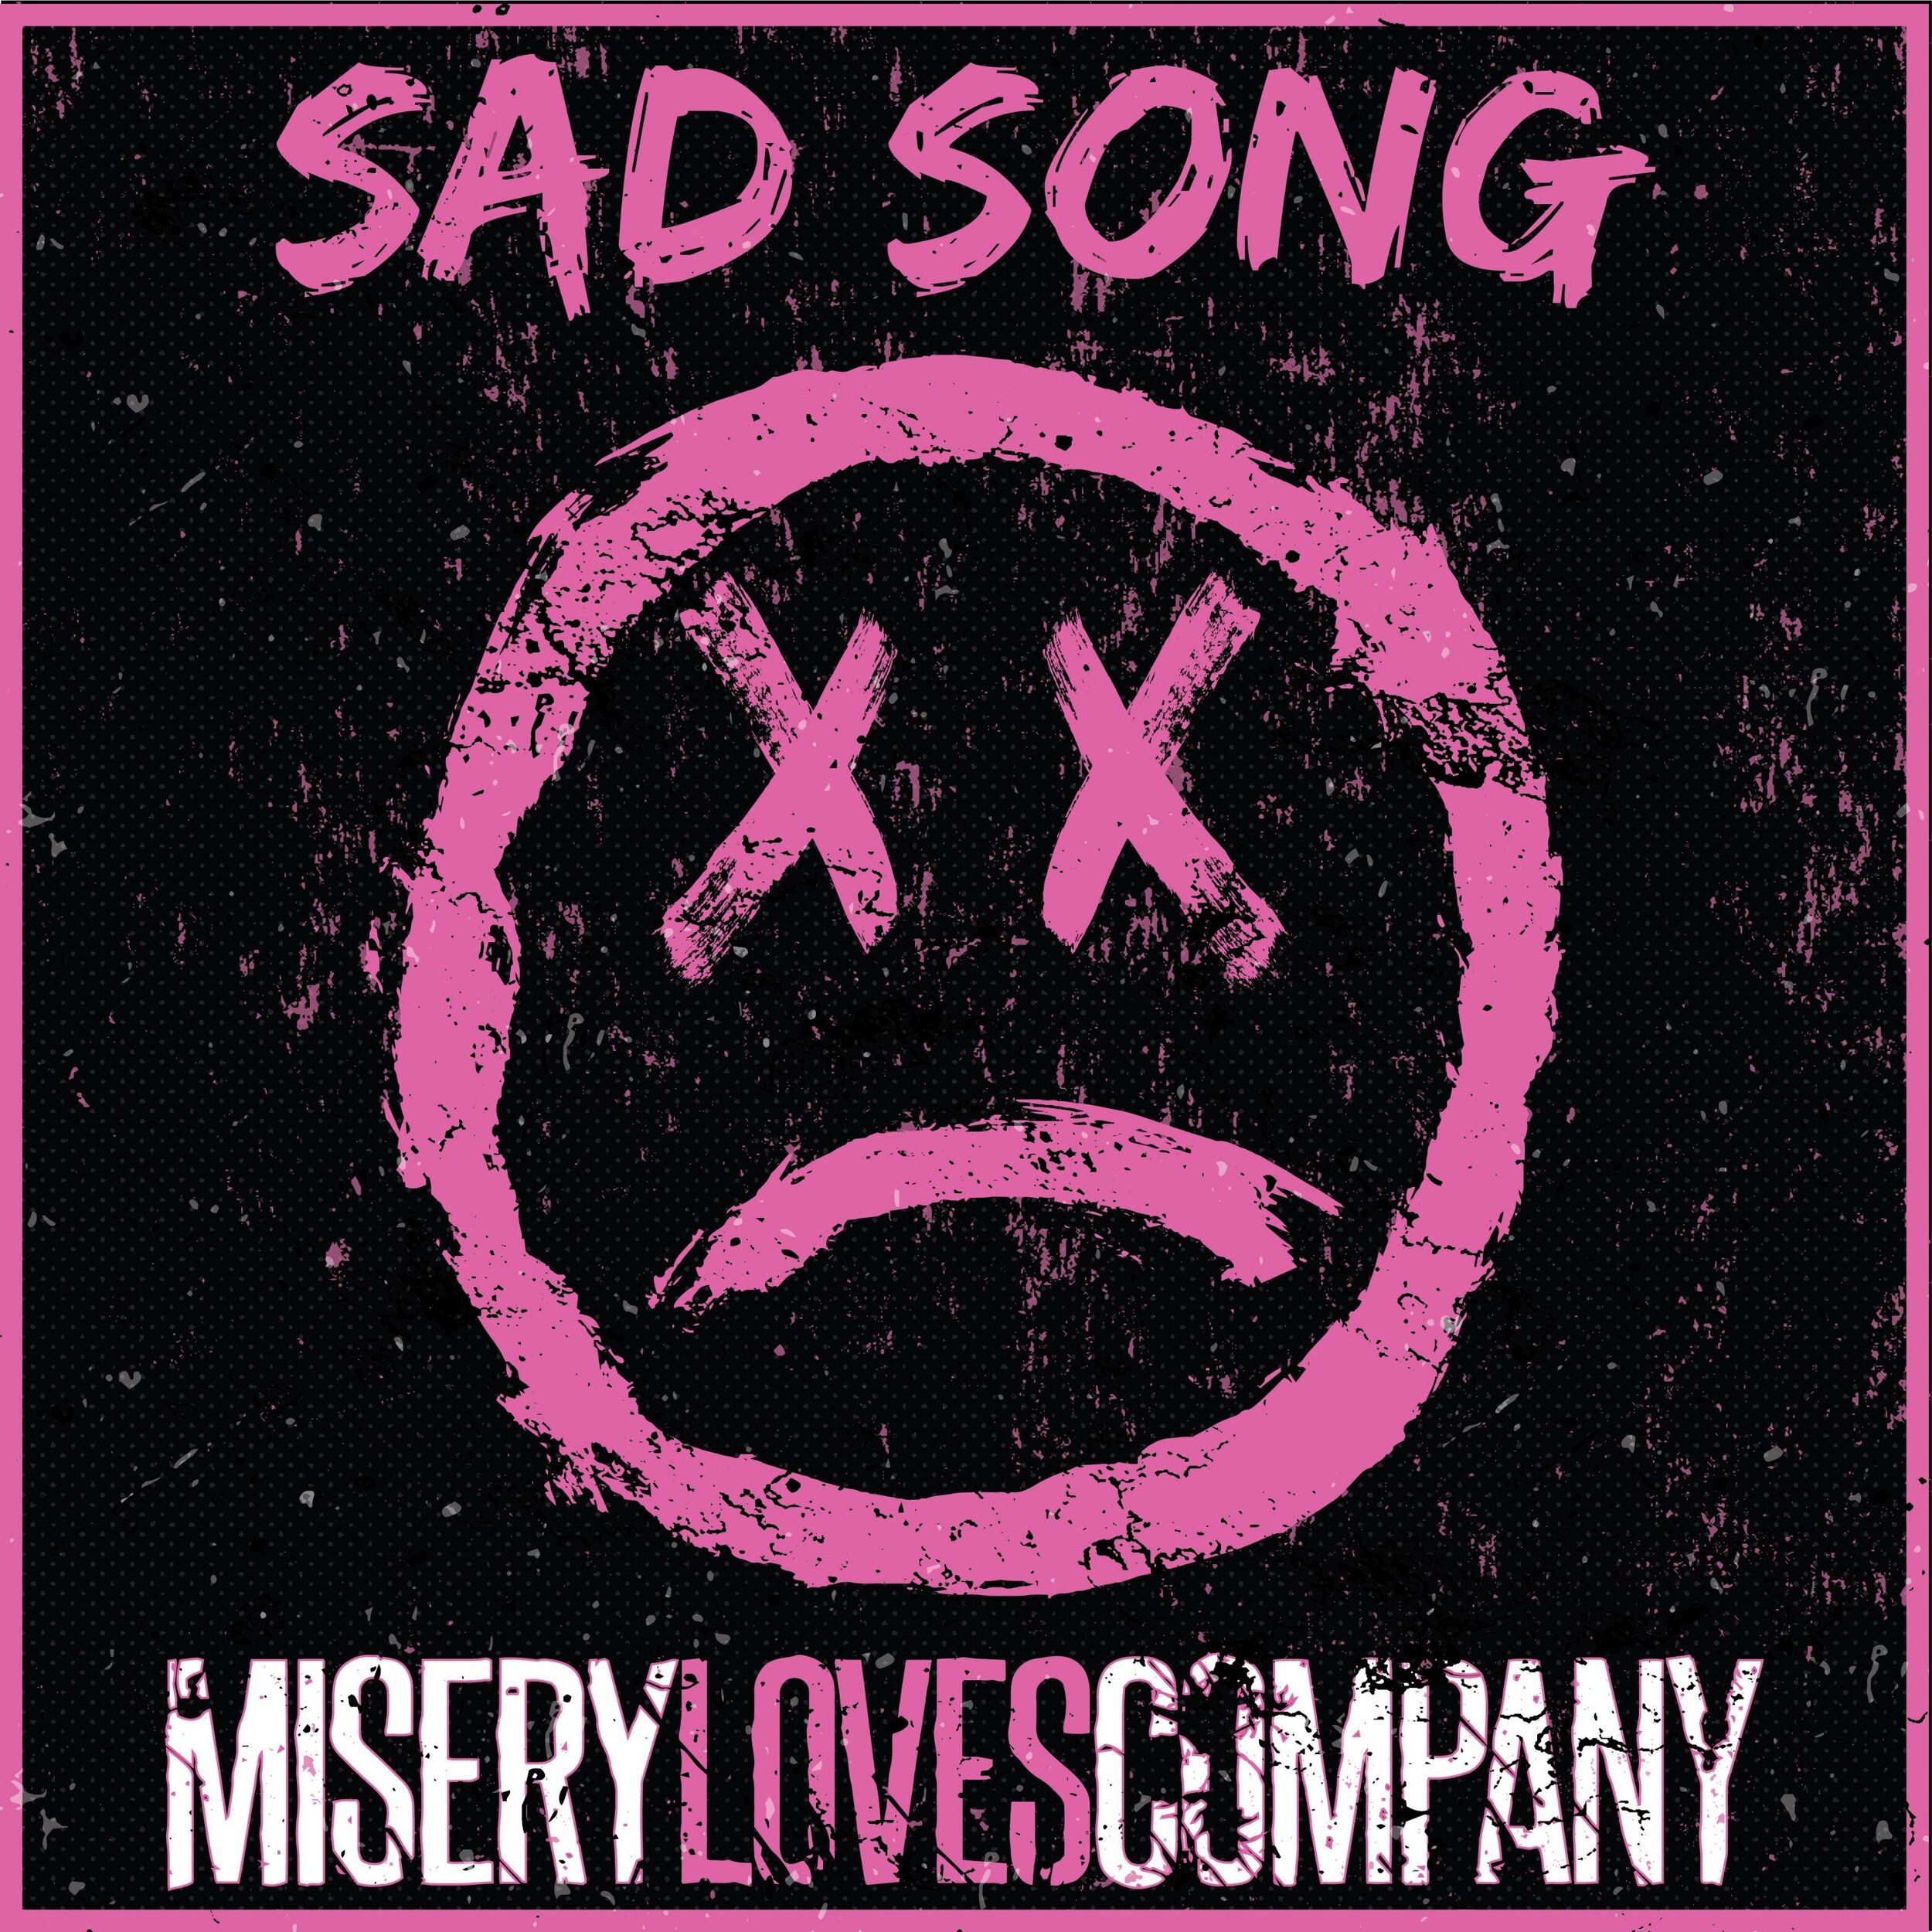 Misery Loves Company - "Sad Song"